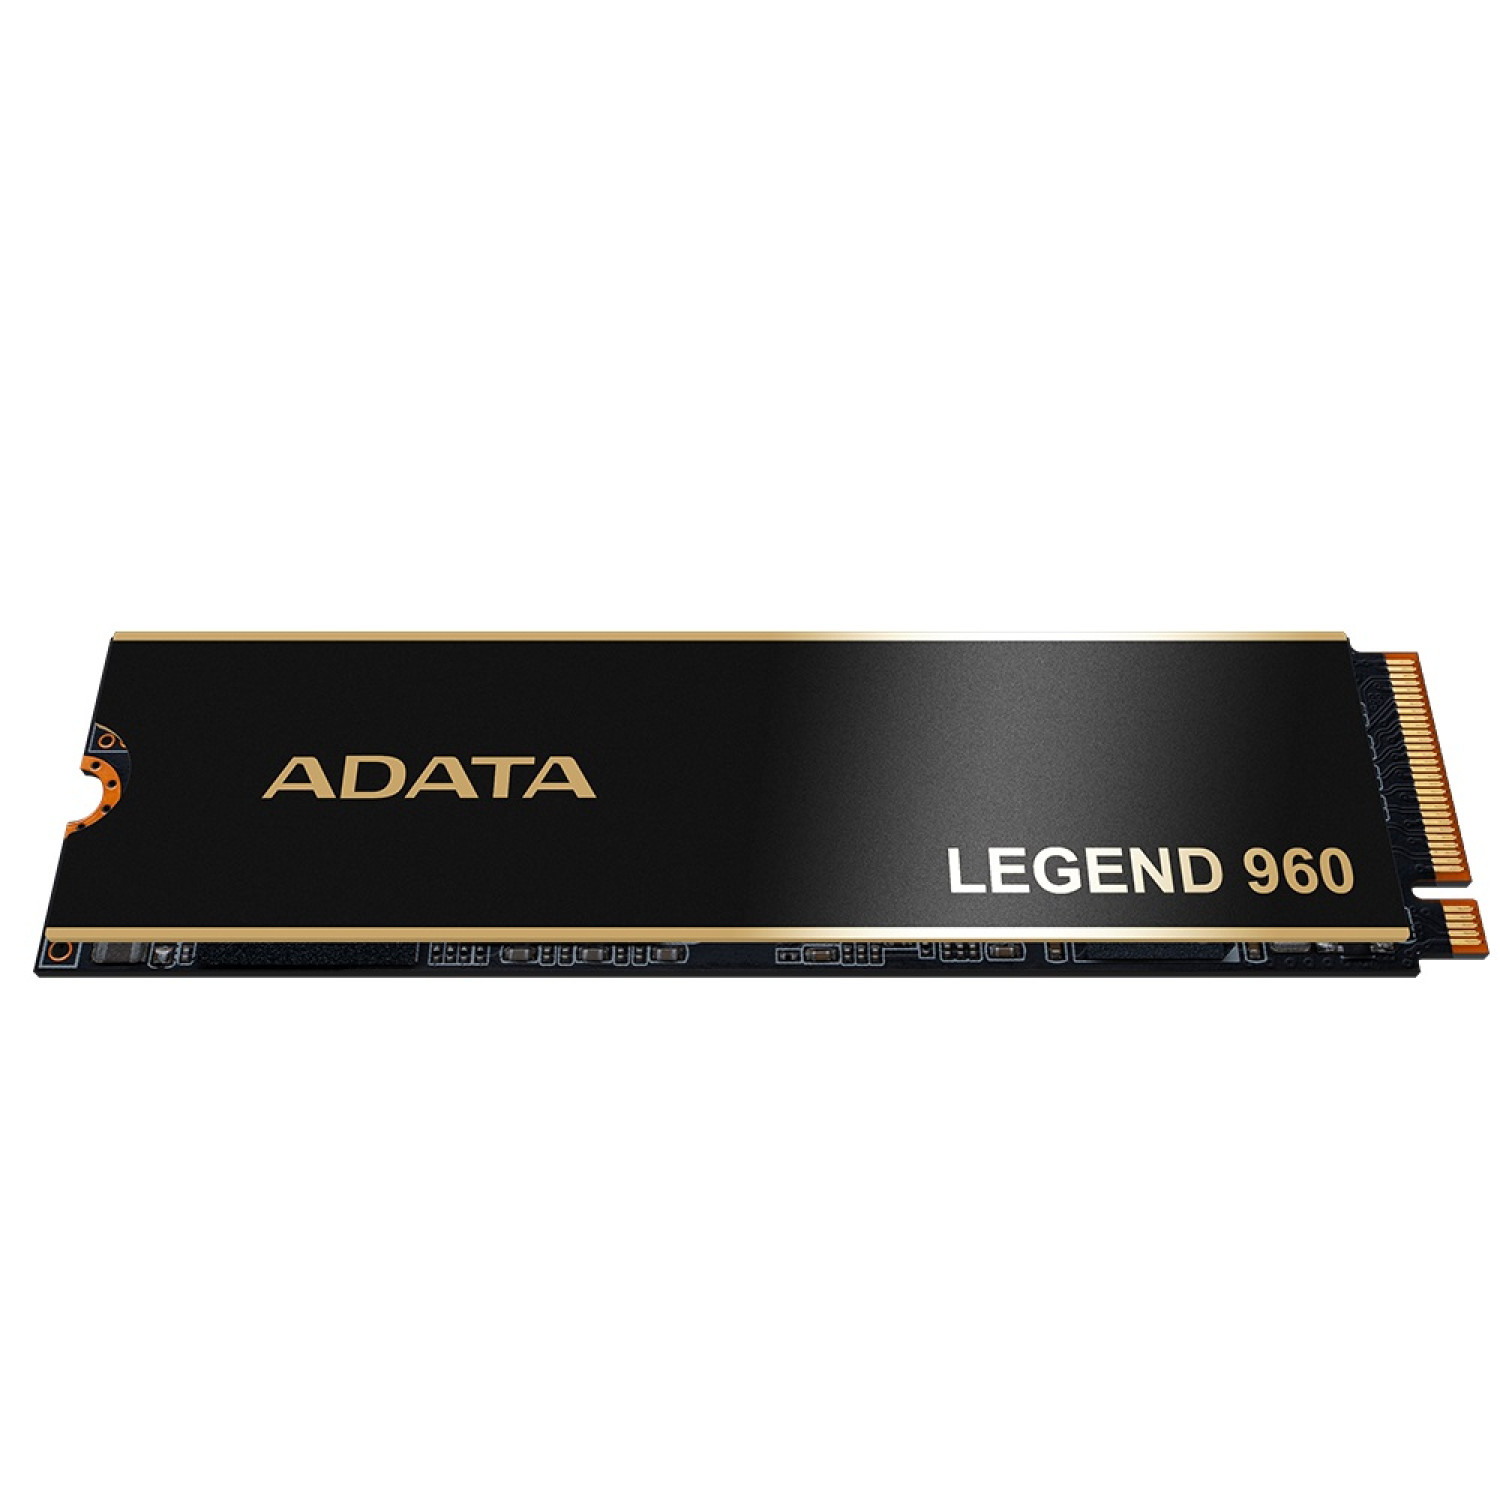 حافظه اس اس دی ADATA Legend 960 1TB-5